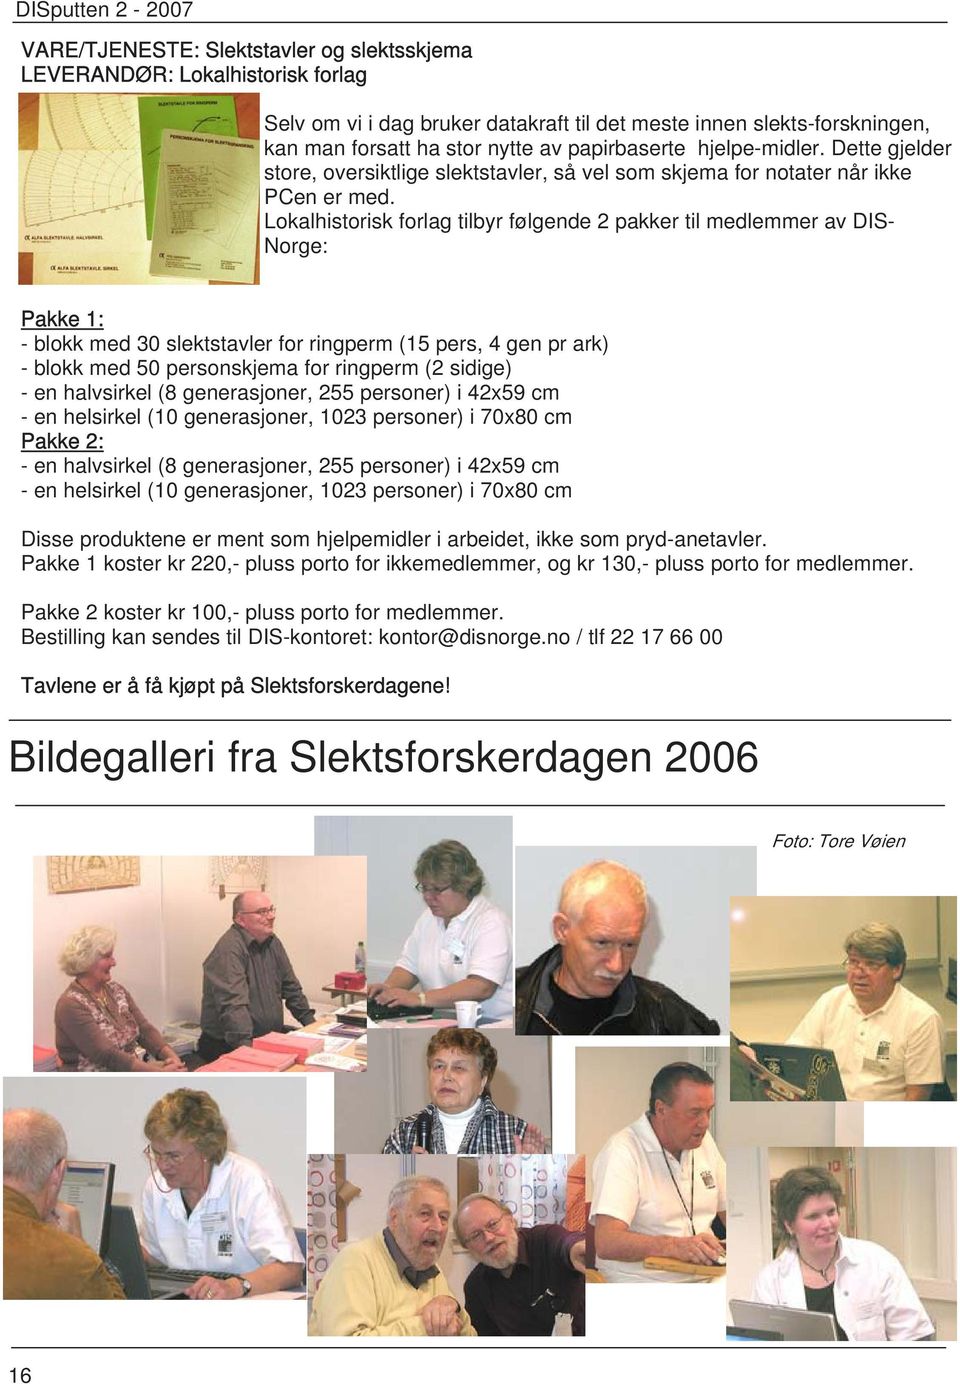 Lokalhistorisk forlag tilbyr følgende 2 pakker til medlemmer av DIS- Norge: Pakke 1: - blokk med 30 slektstavler for ringperm (15 pers, 4 gen pr ark) - blokk med 50 personskjema for ringperm (2